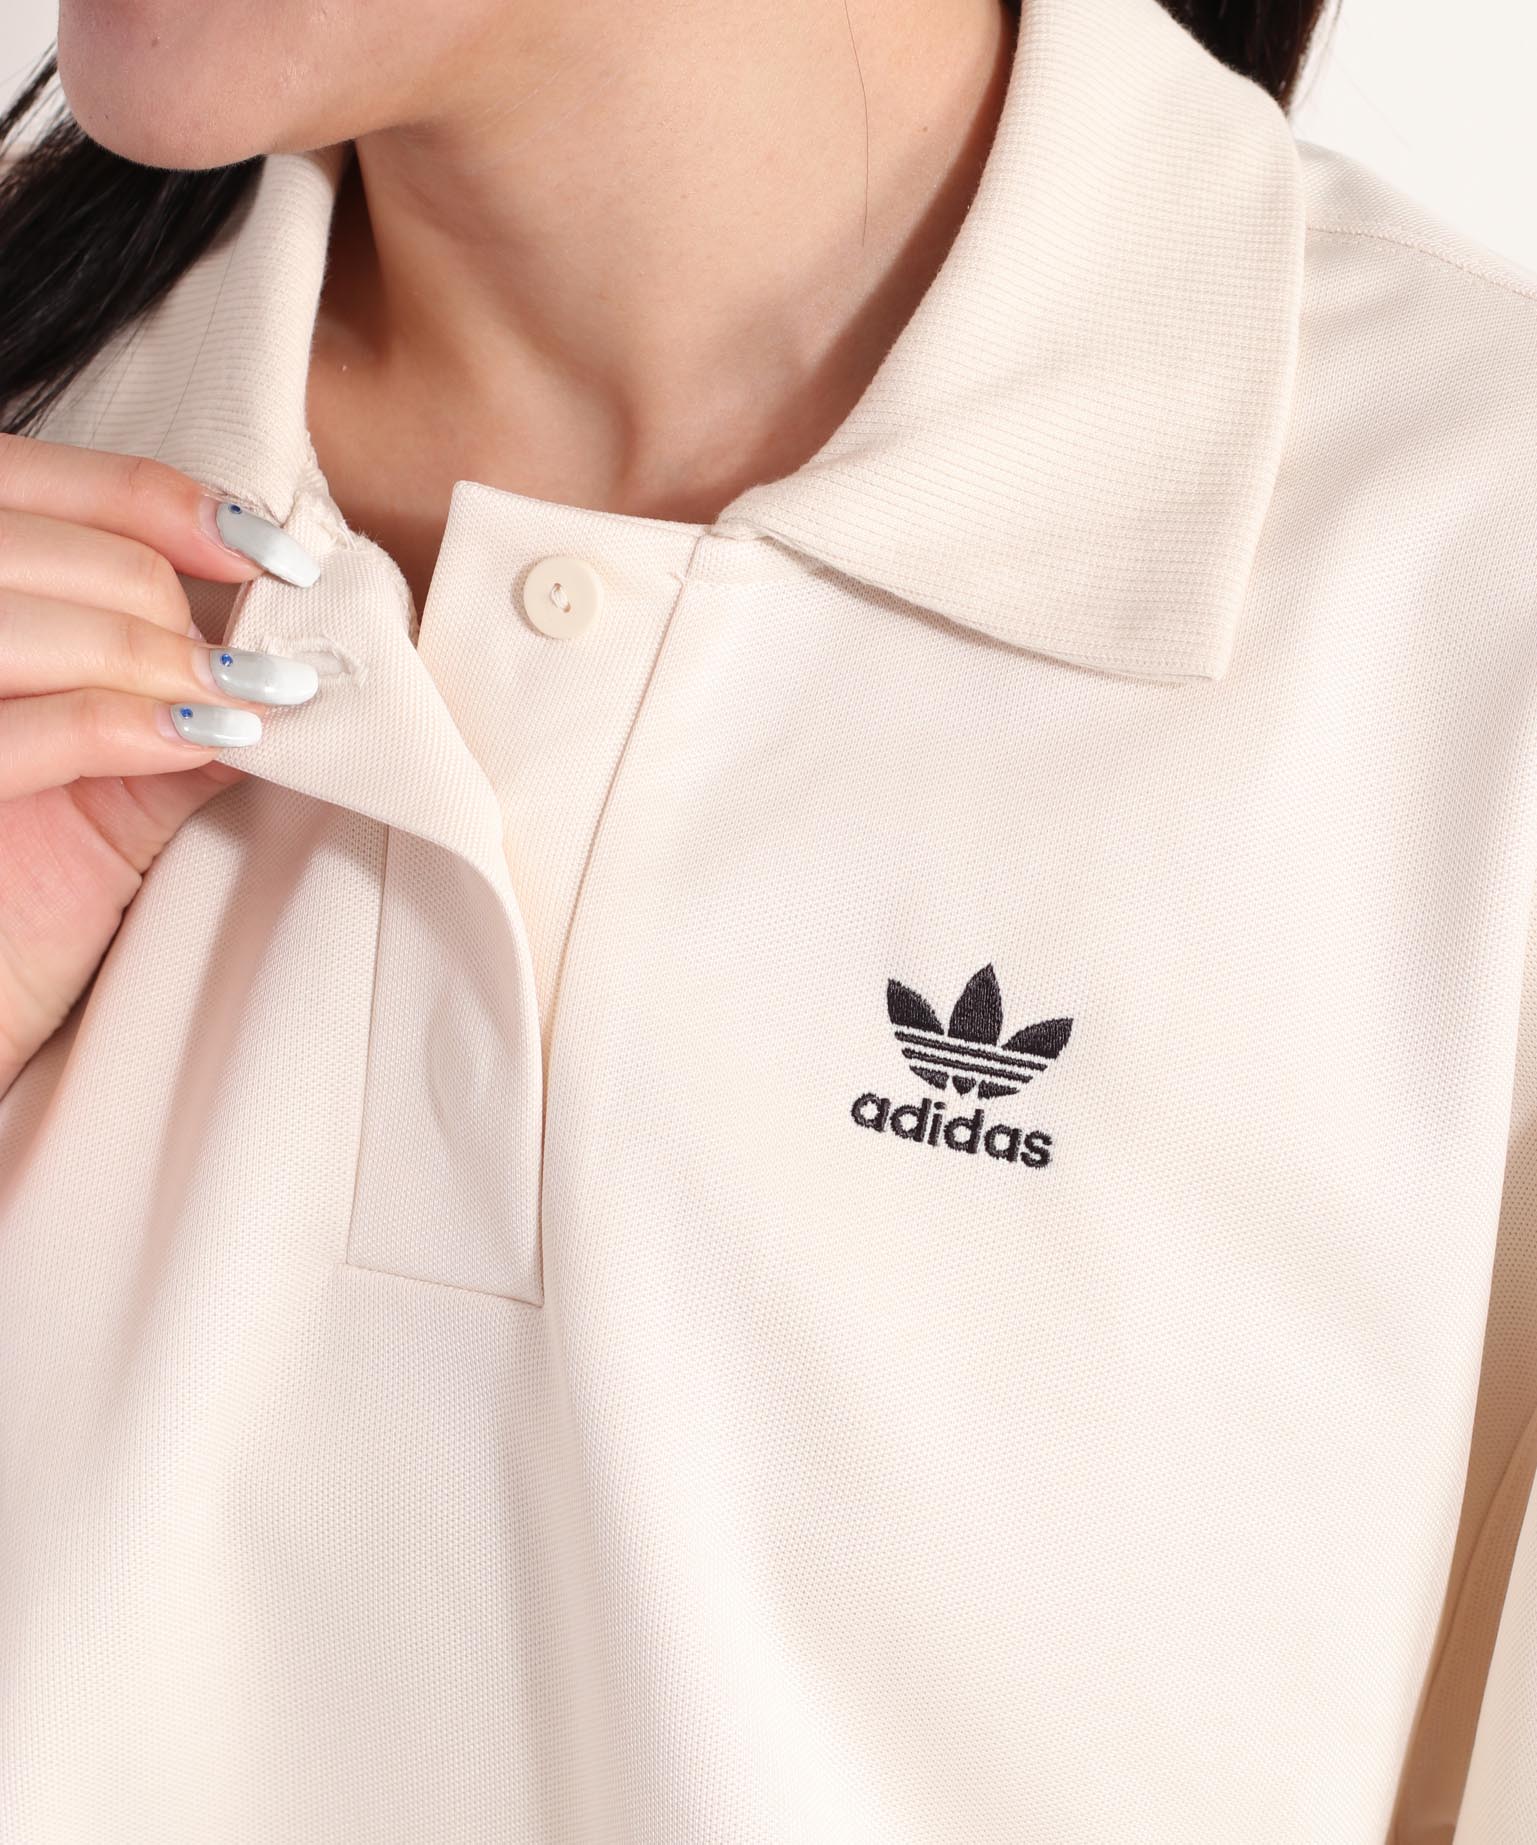 adidas アディダス ポロシャツ ホワイト ロゴ入り - ポロシャツ